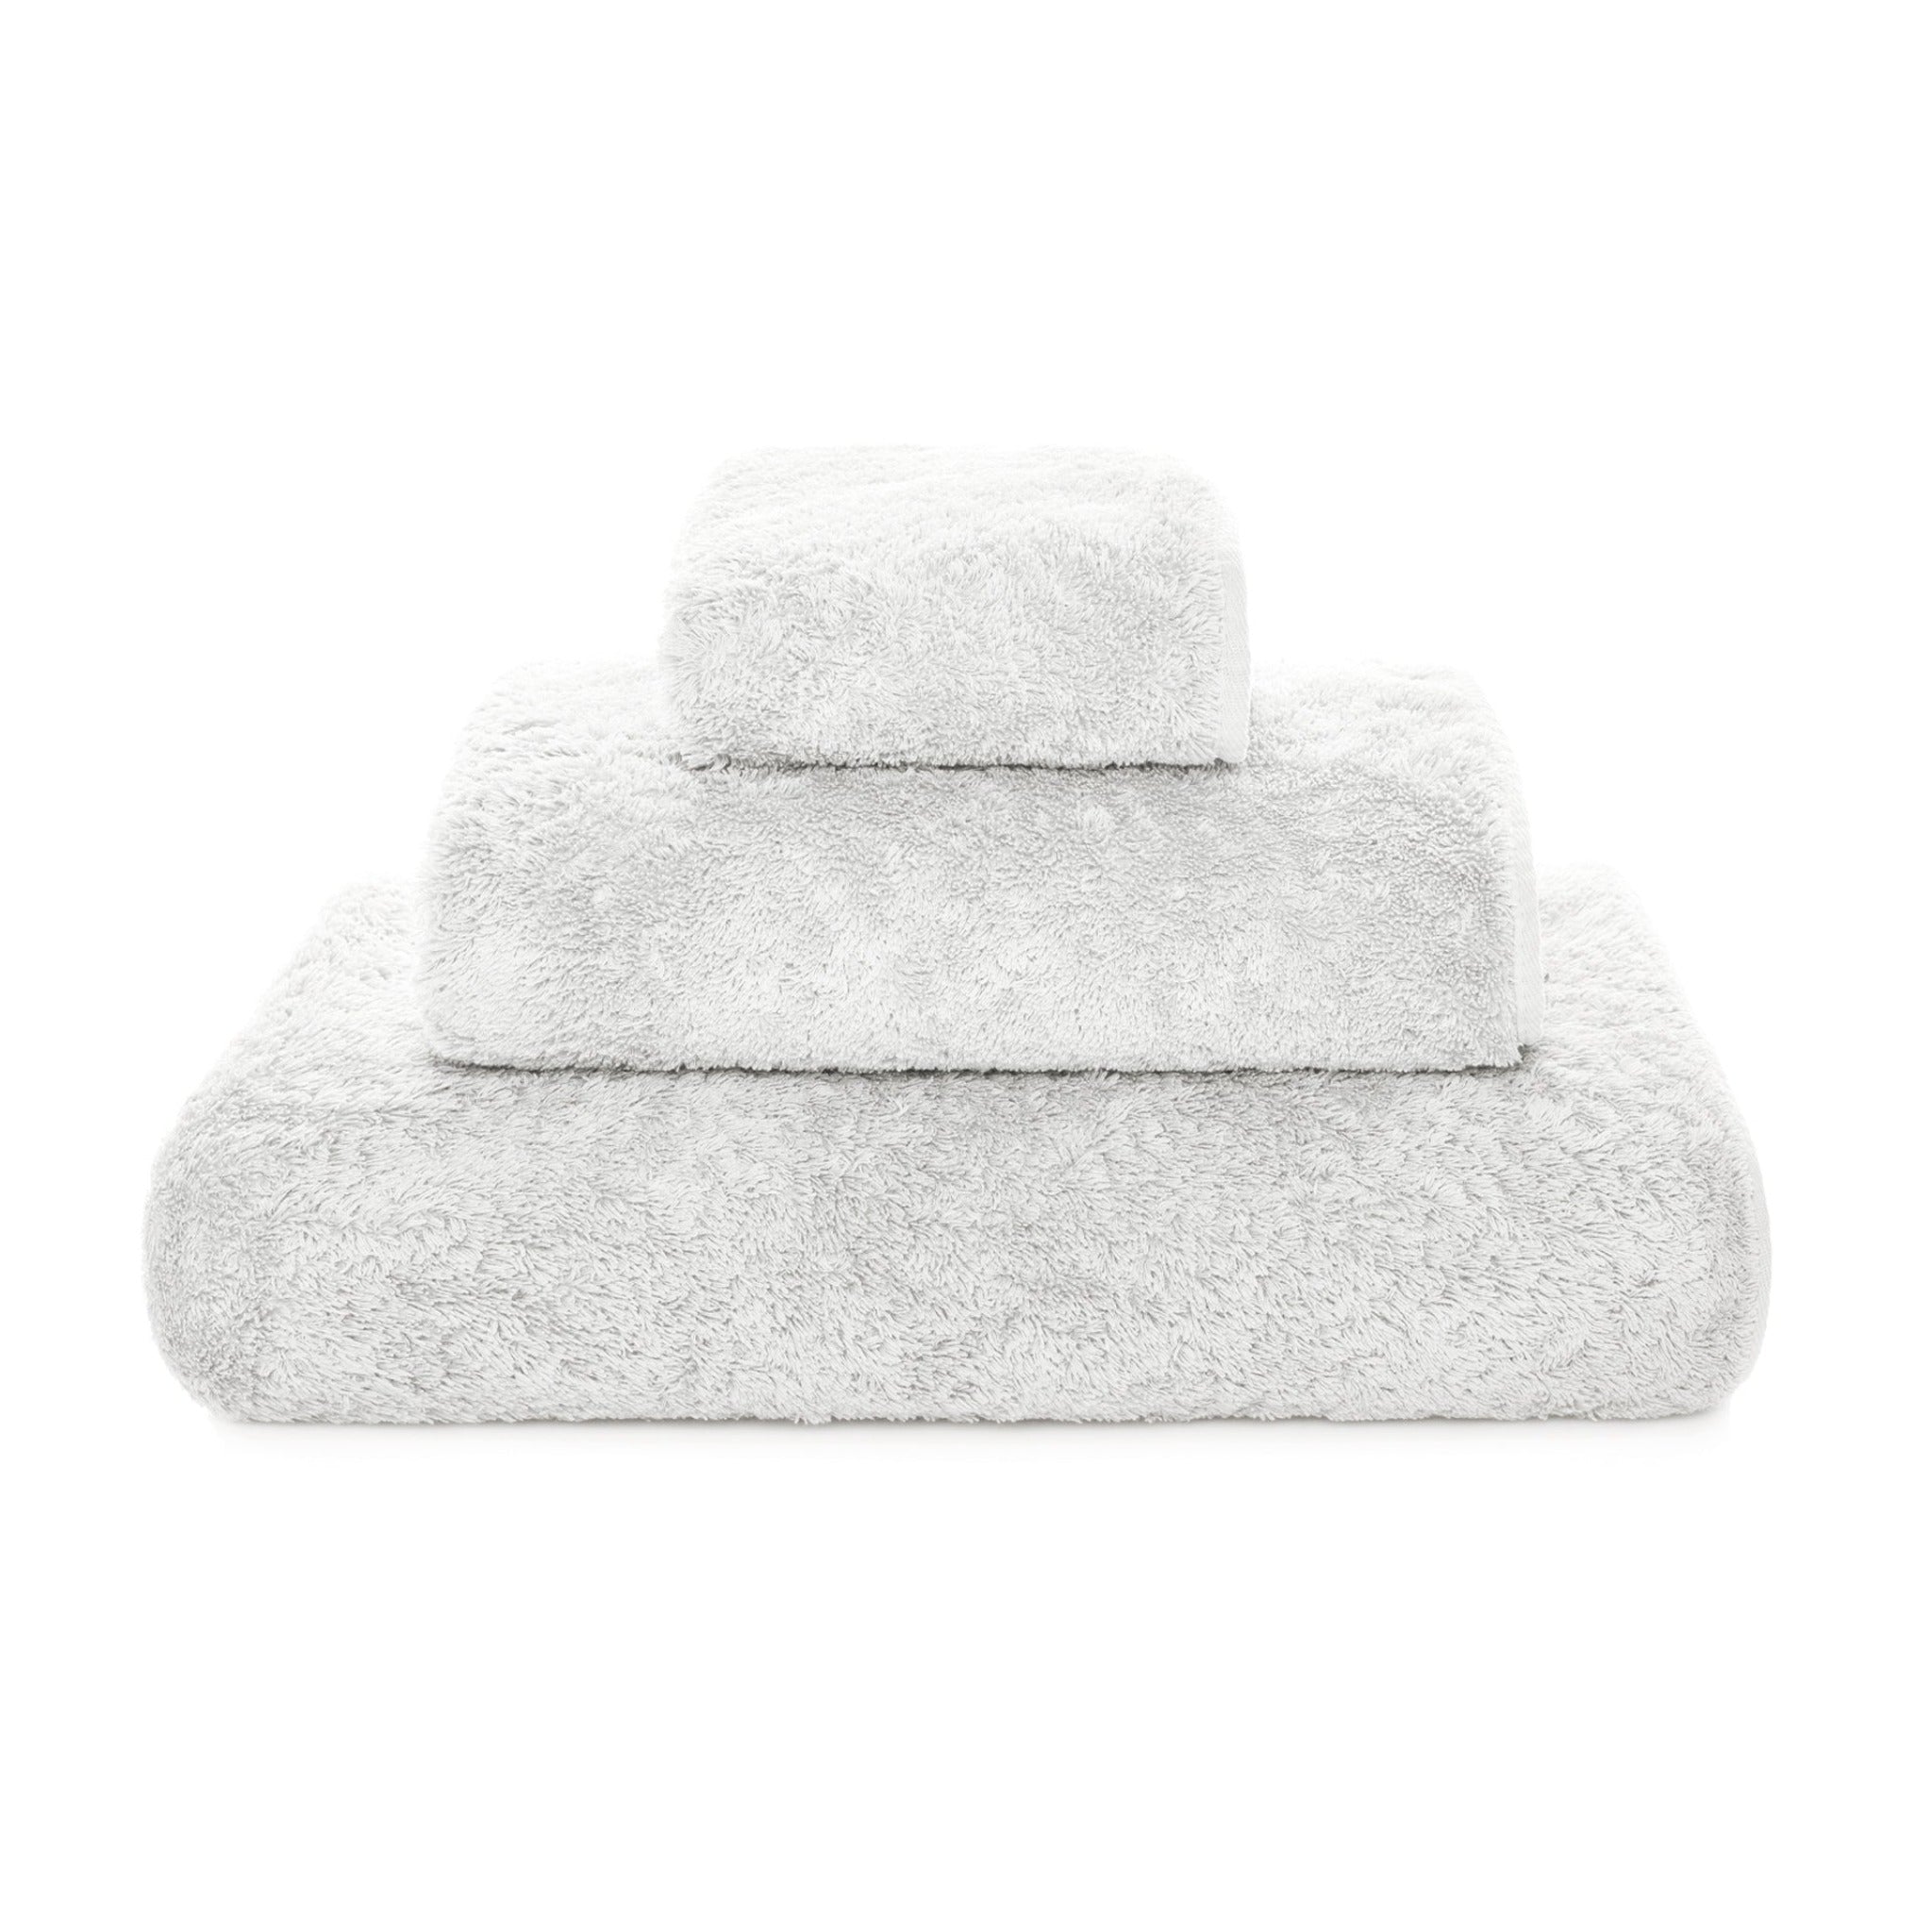 https://flandb.com/cdn/shop/products/Graccioza-Egoist-Bath-Towels-Cloud_5000x.jpg?v=1682505007